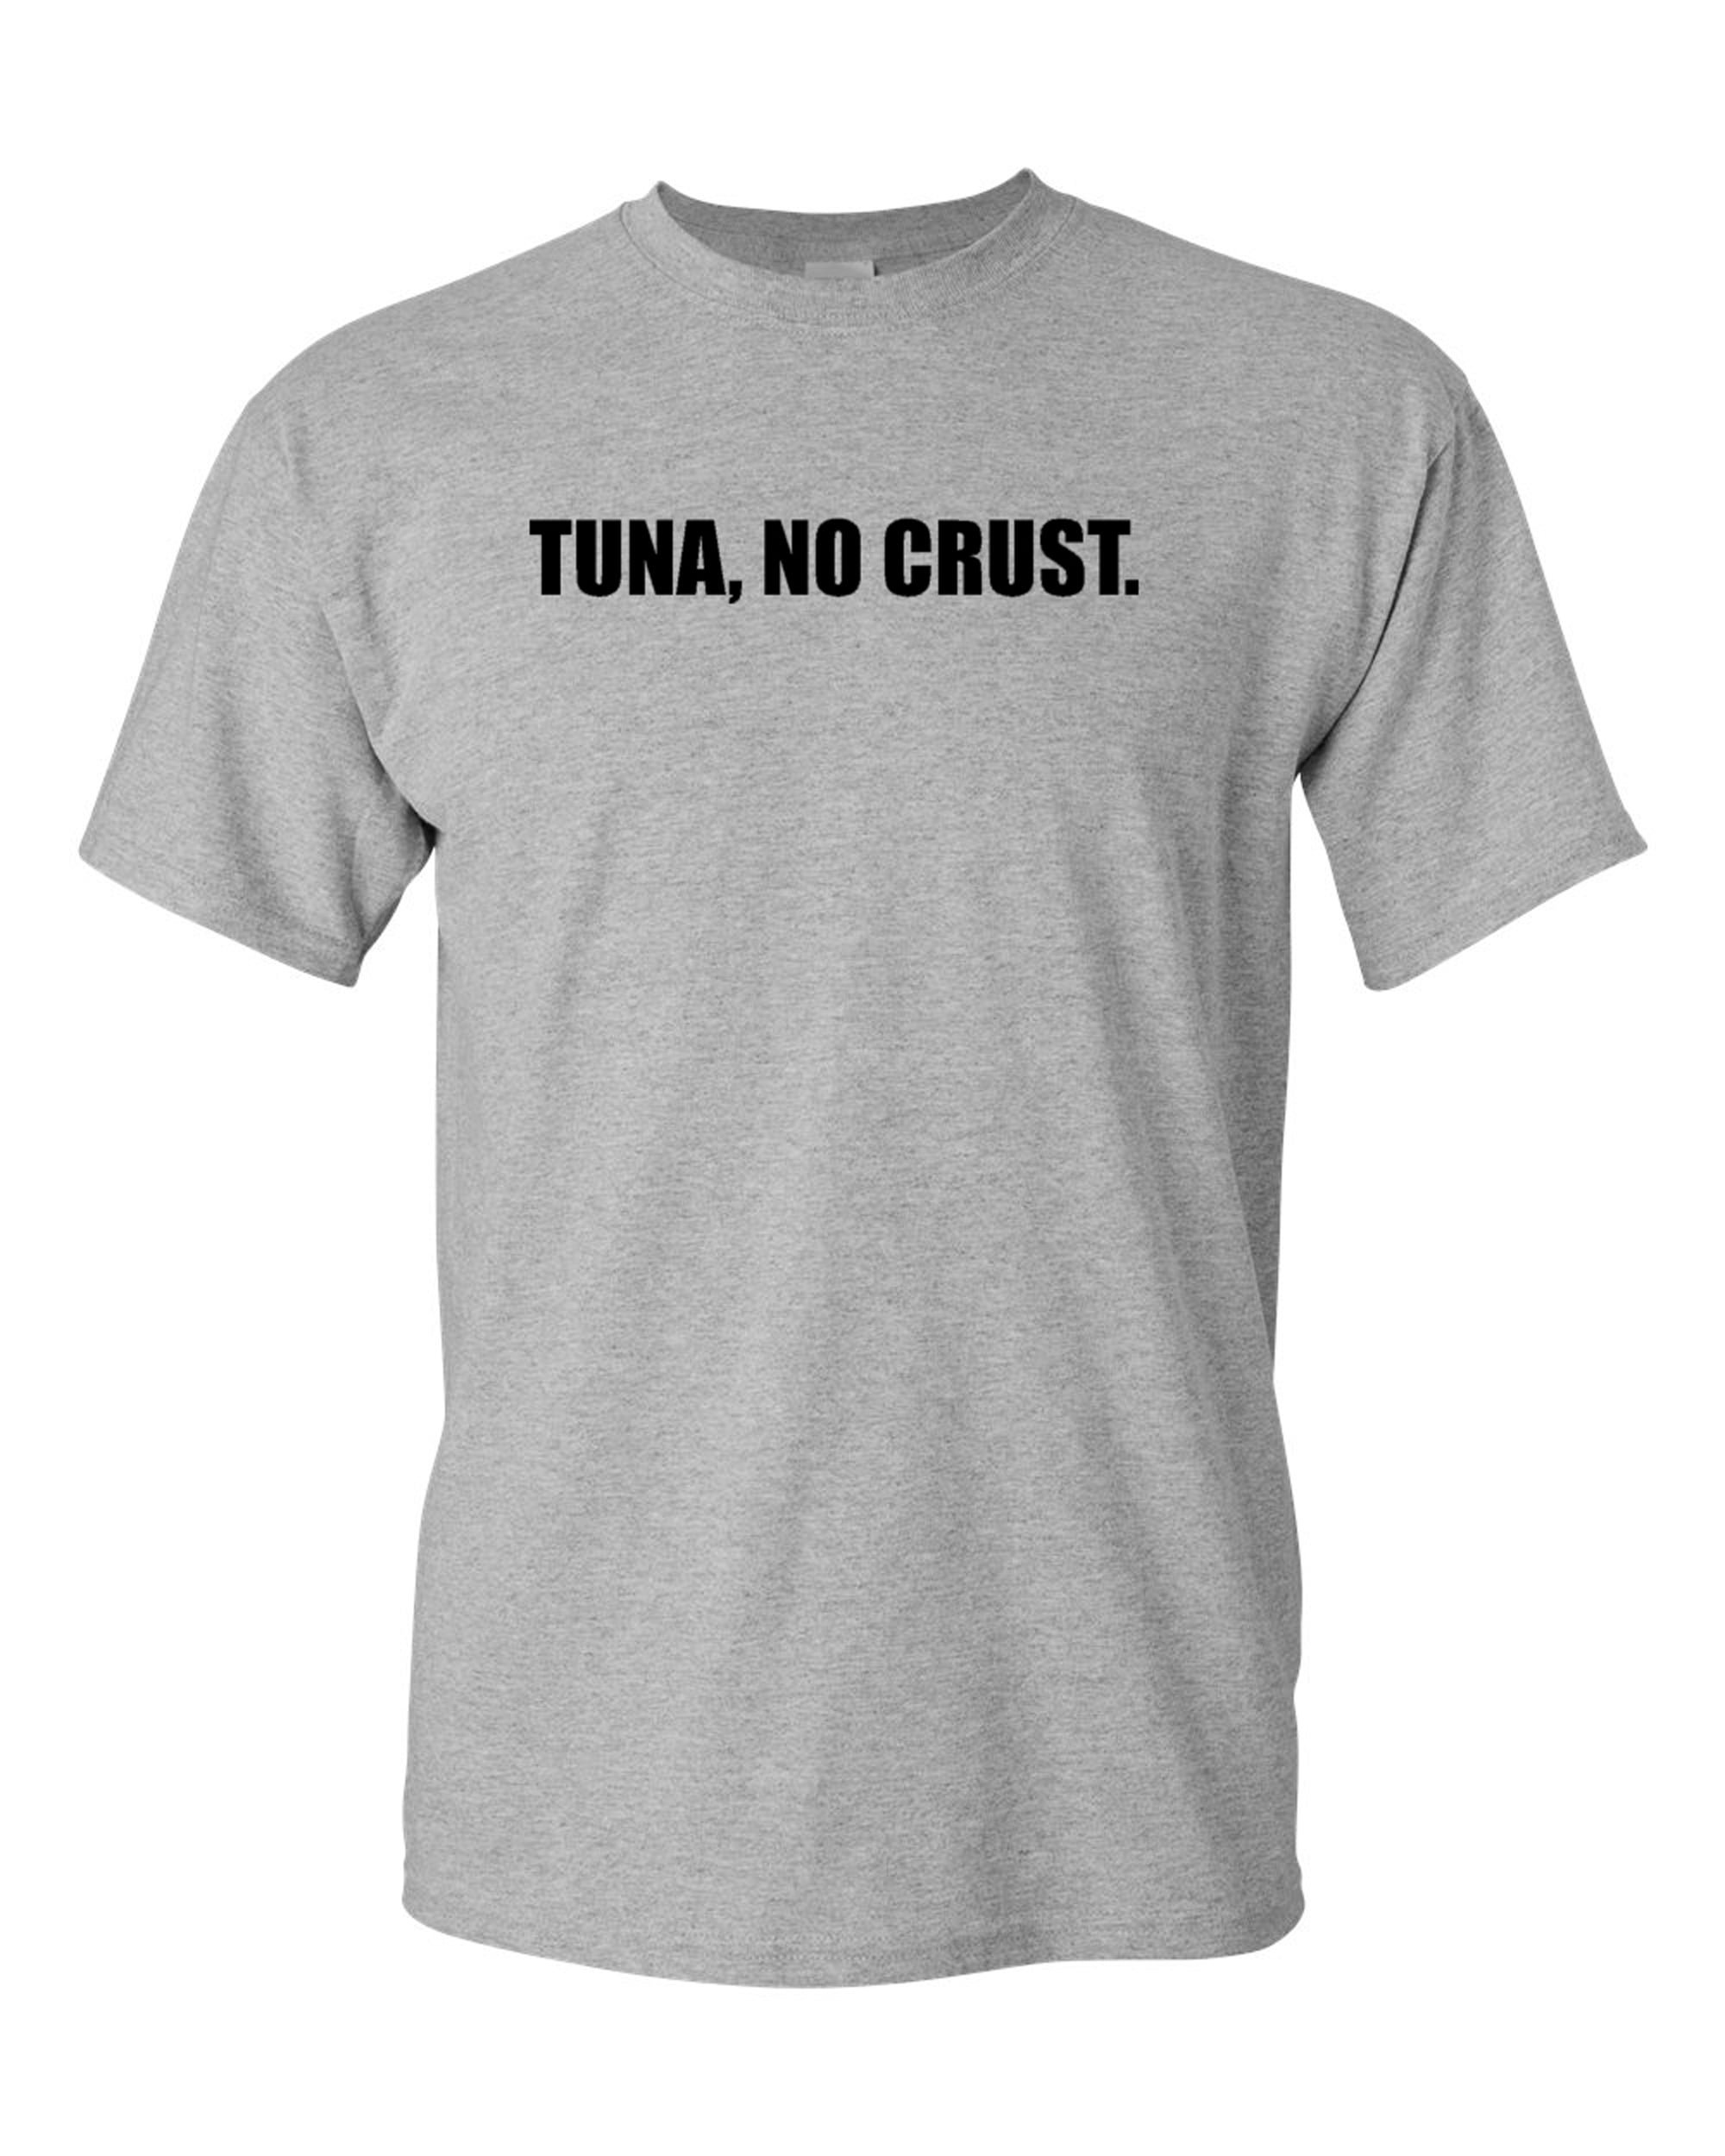 Tuna, No Crust. Adult T-Shirt Tee